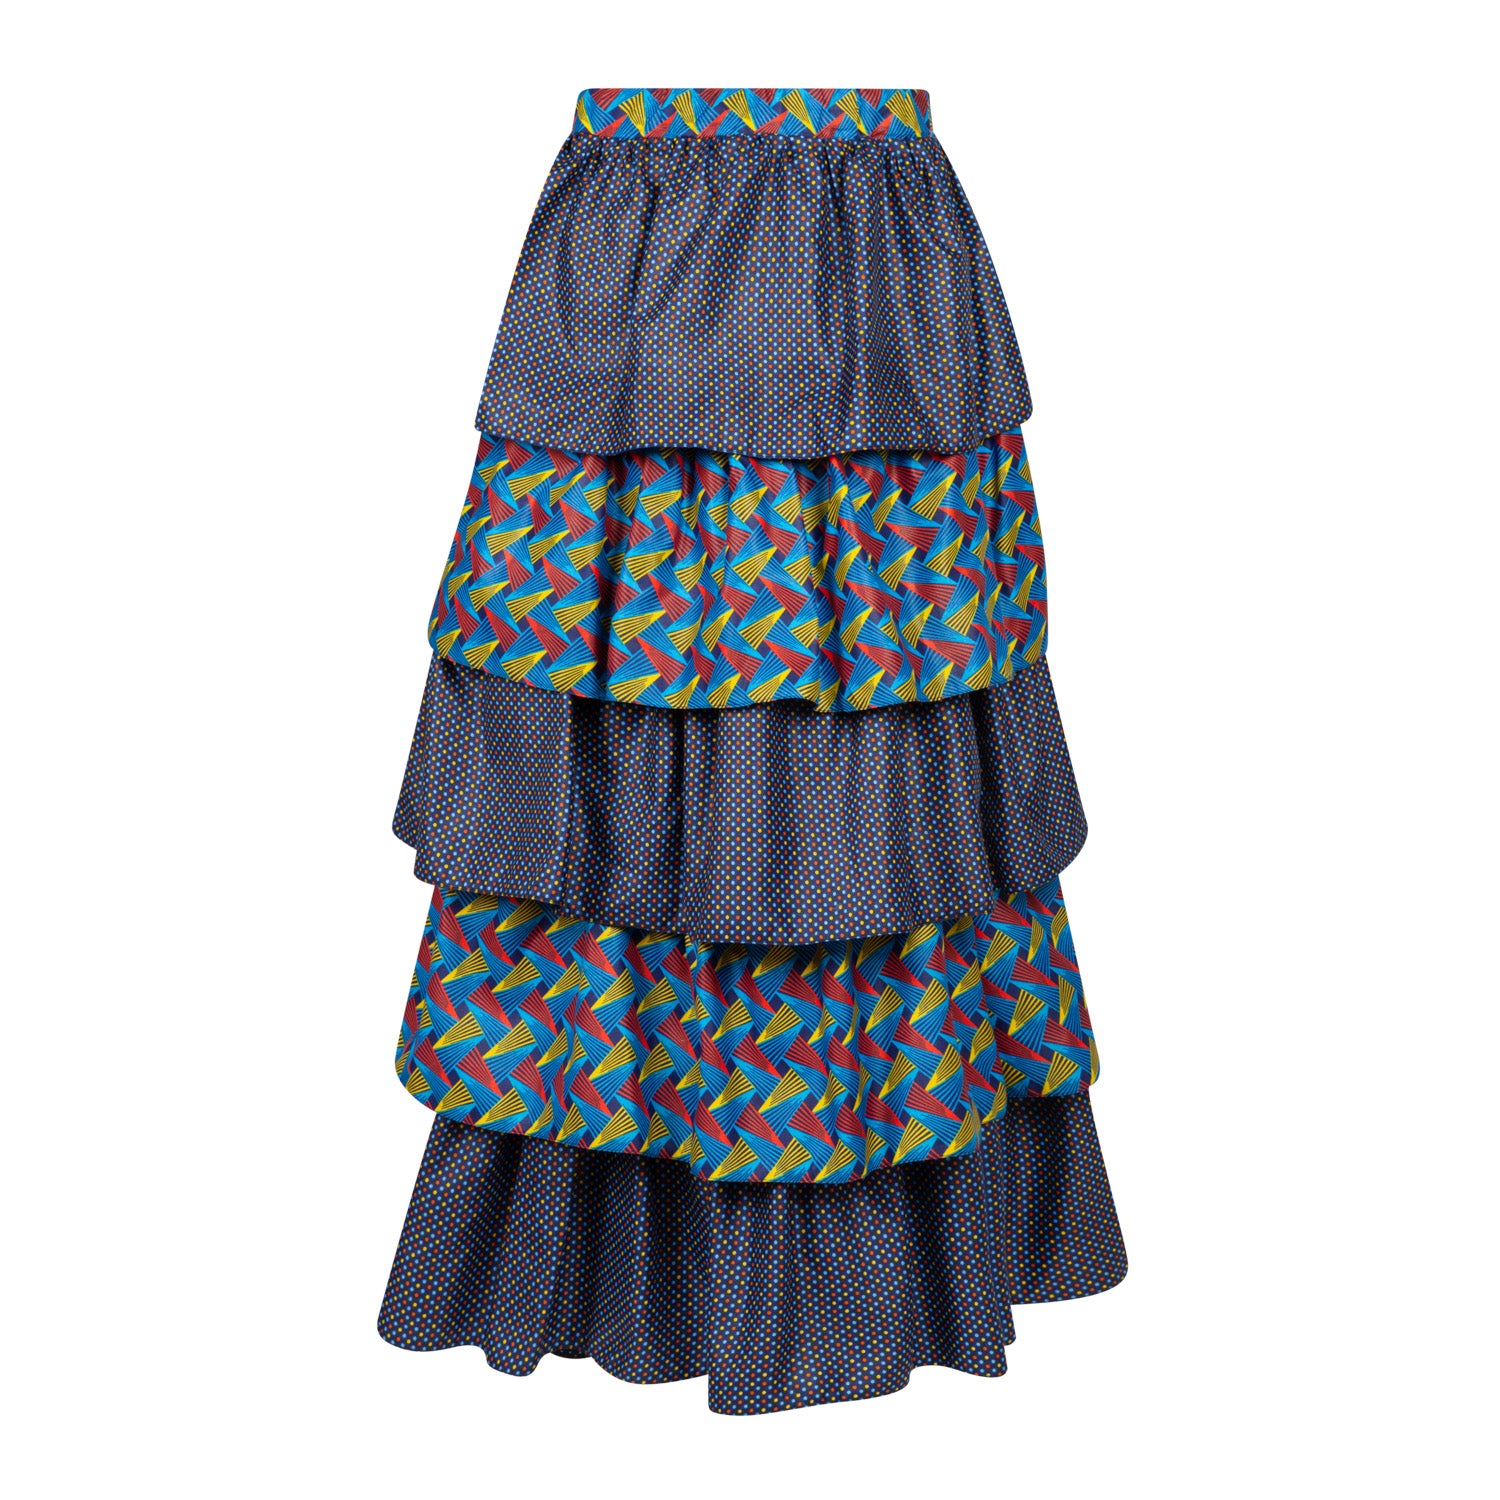 S3.1 Tired Skirt - Shweshwe print